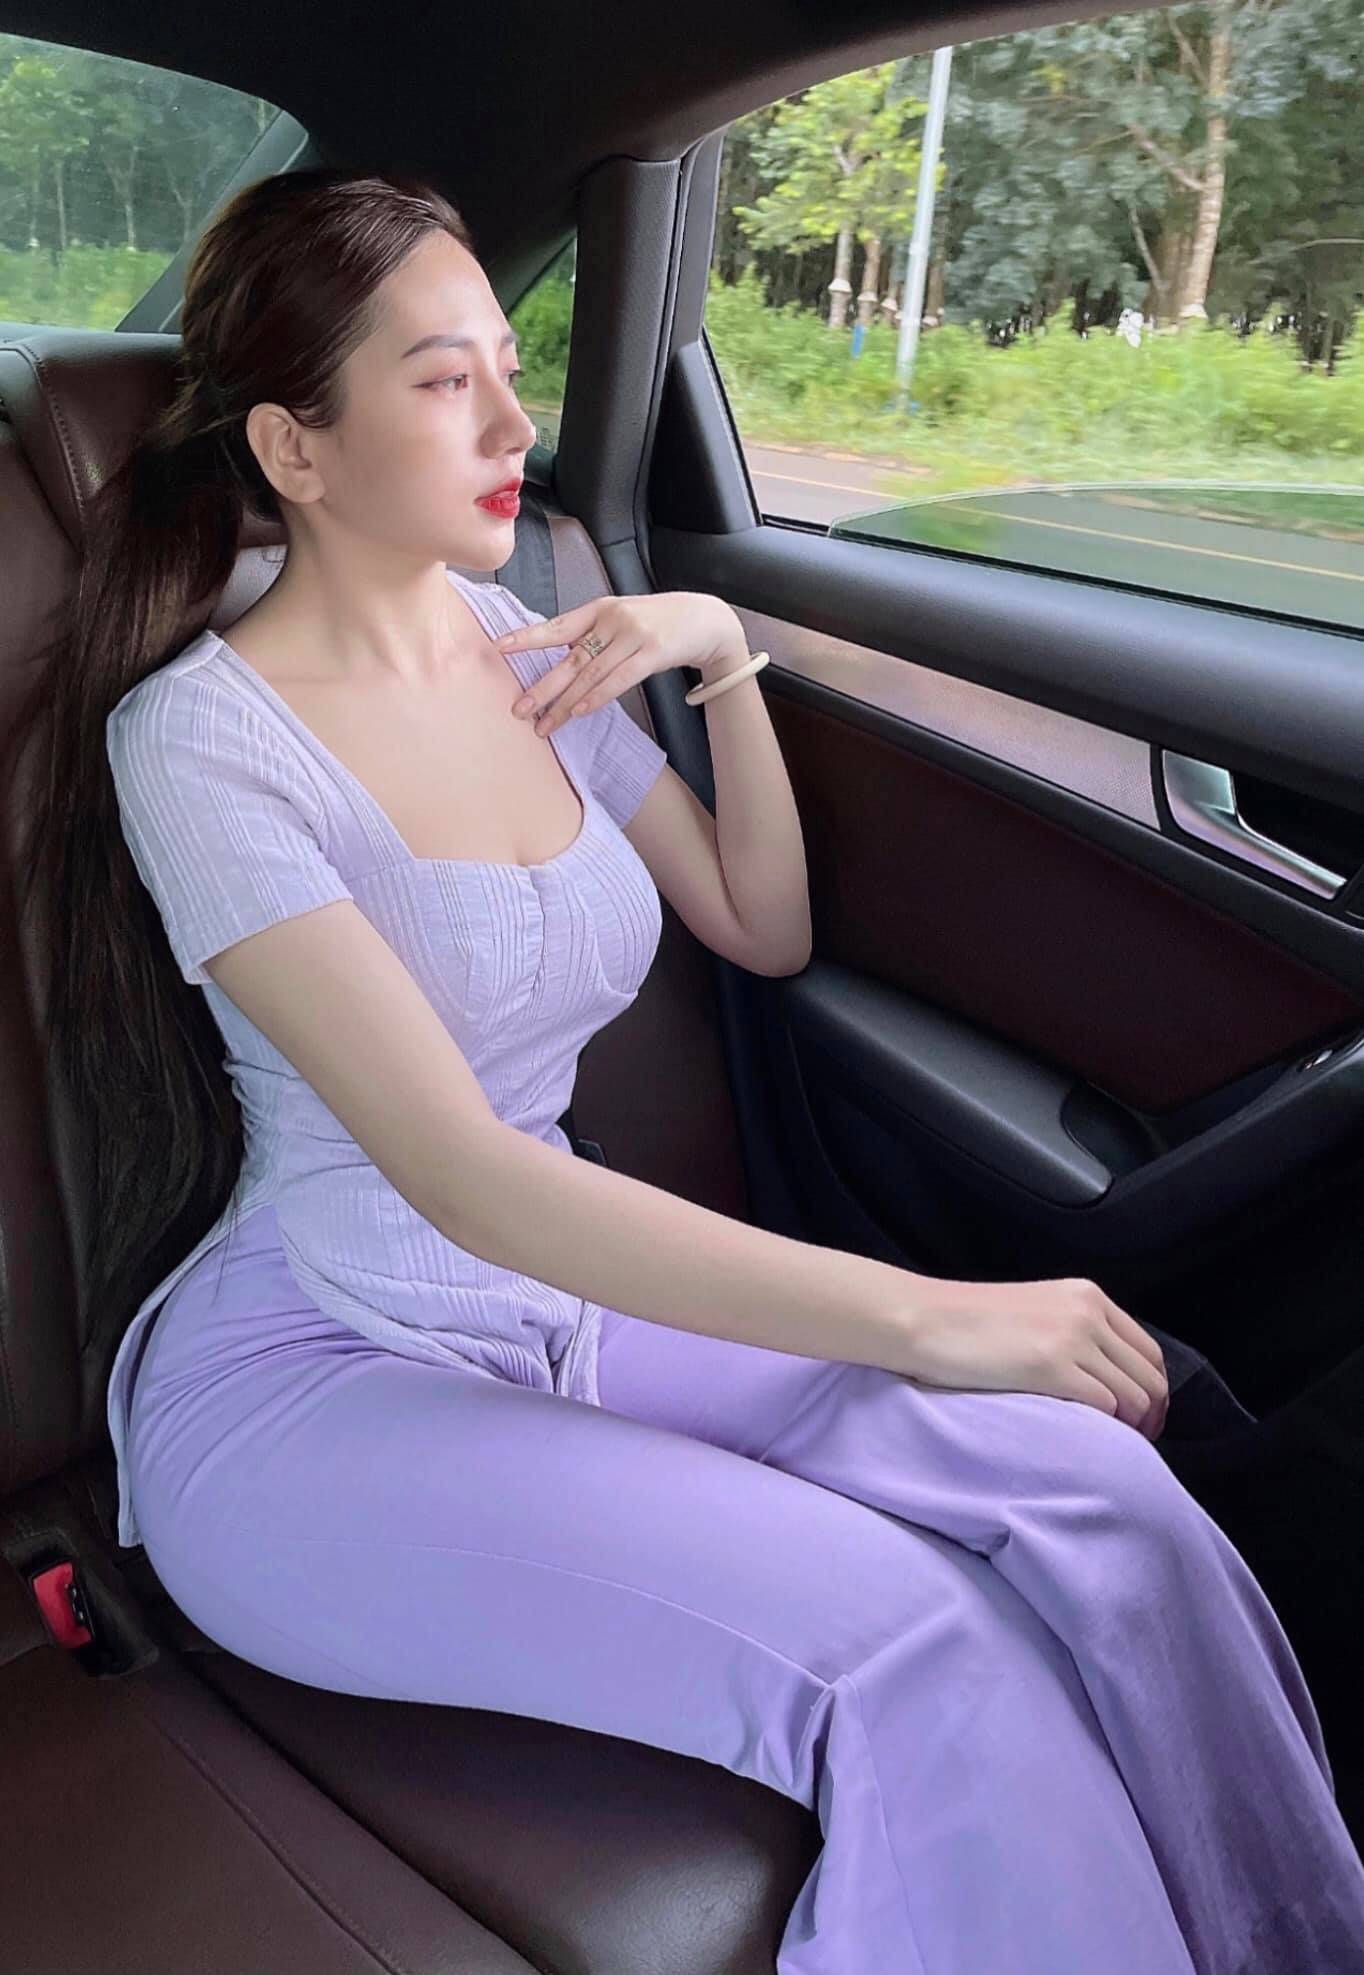 Chân dung hot girl suýt bị nhầm thành nữ chính trong vụ lộ clip nhạy cảm trên xe ô tô ở Đắk Lắk